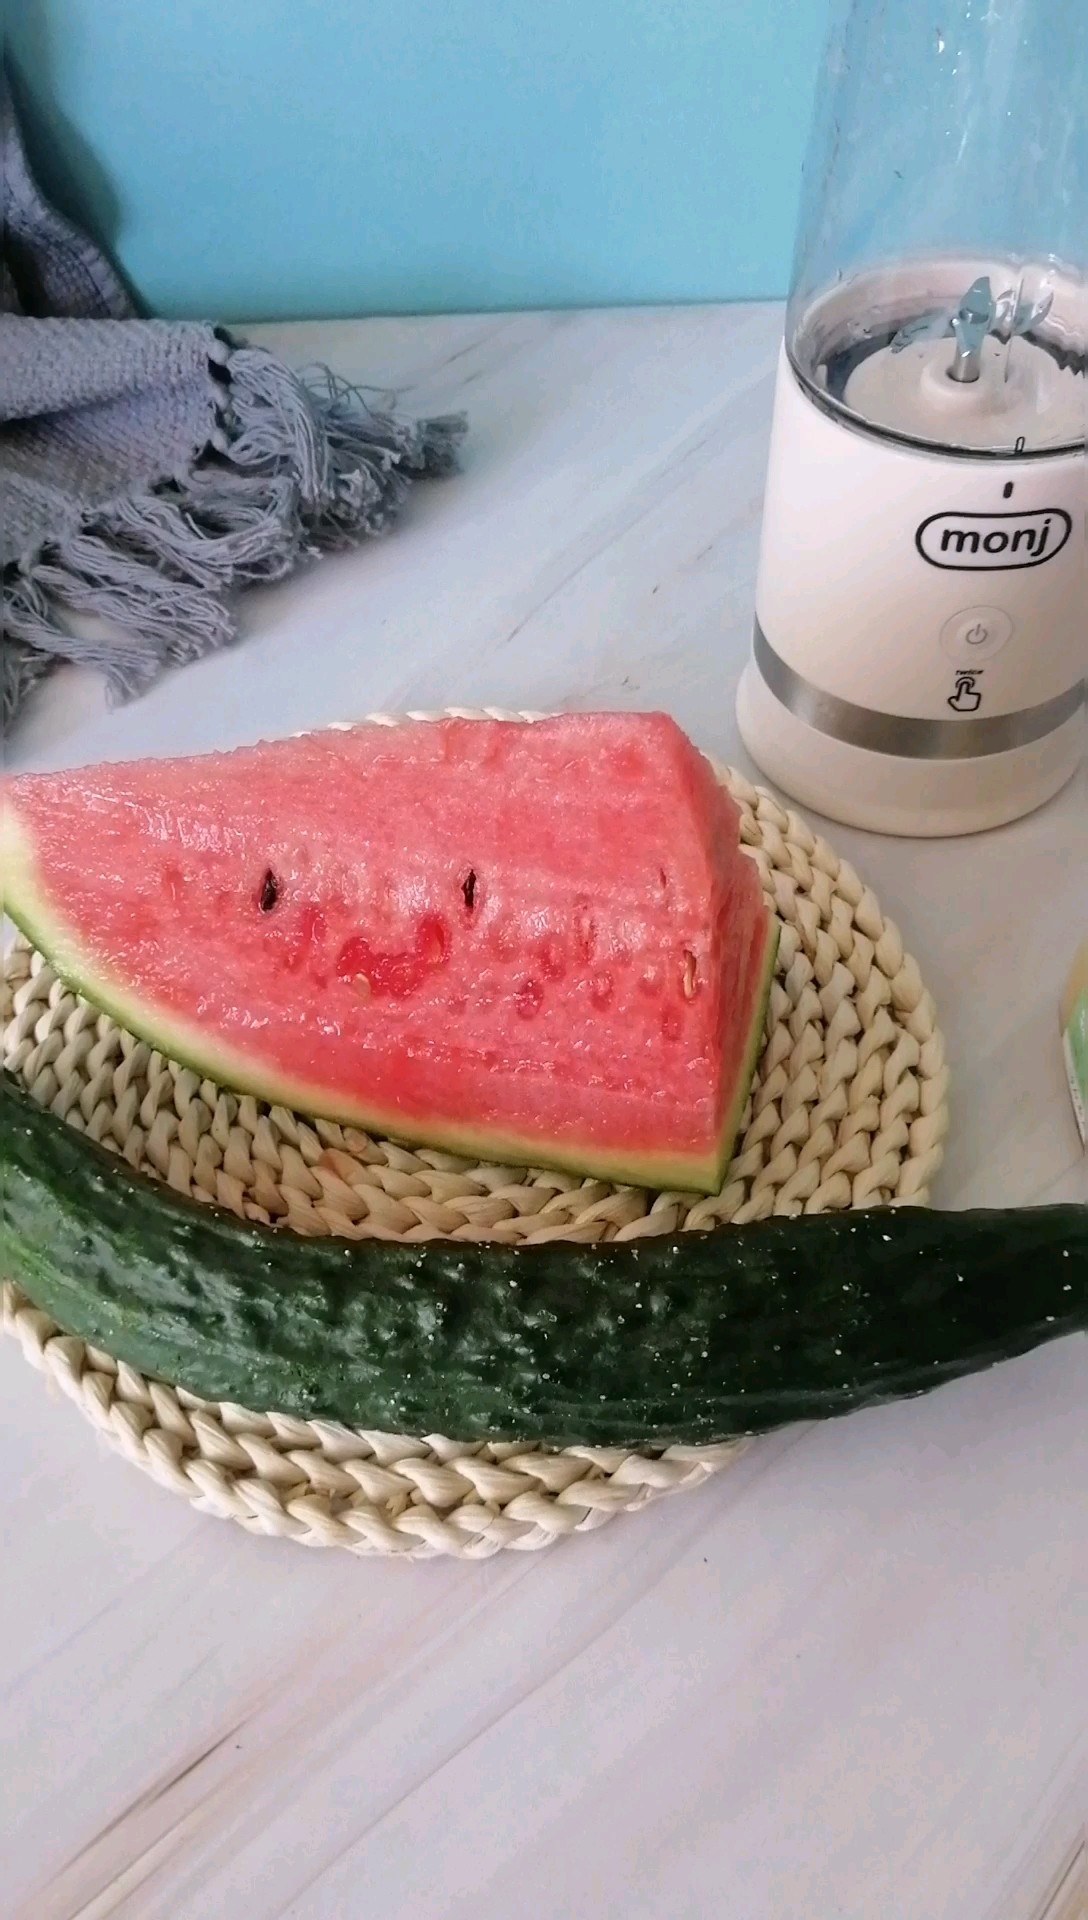 Watermelon Juice and Cucumber Juice